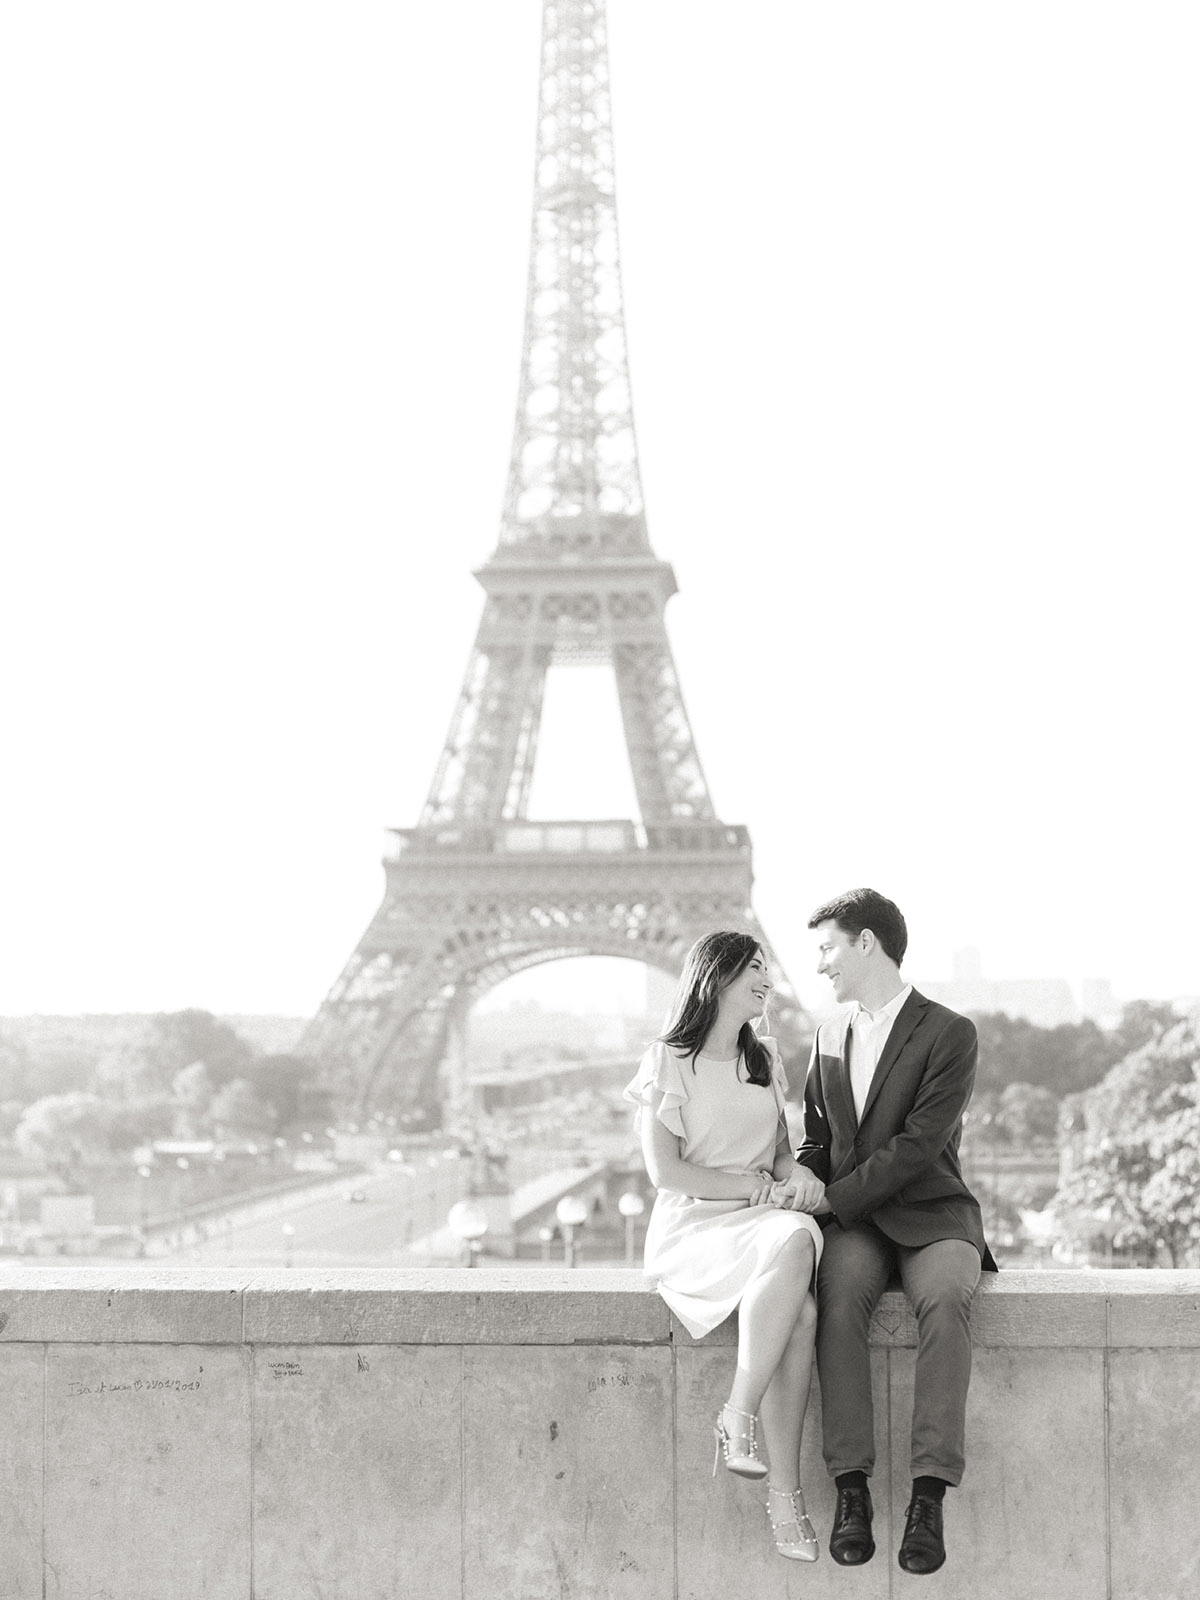 Un couple se regarde assis devant la tour eiffel. C'est un moment très romantique